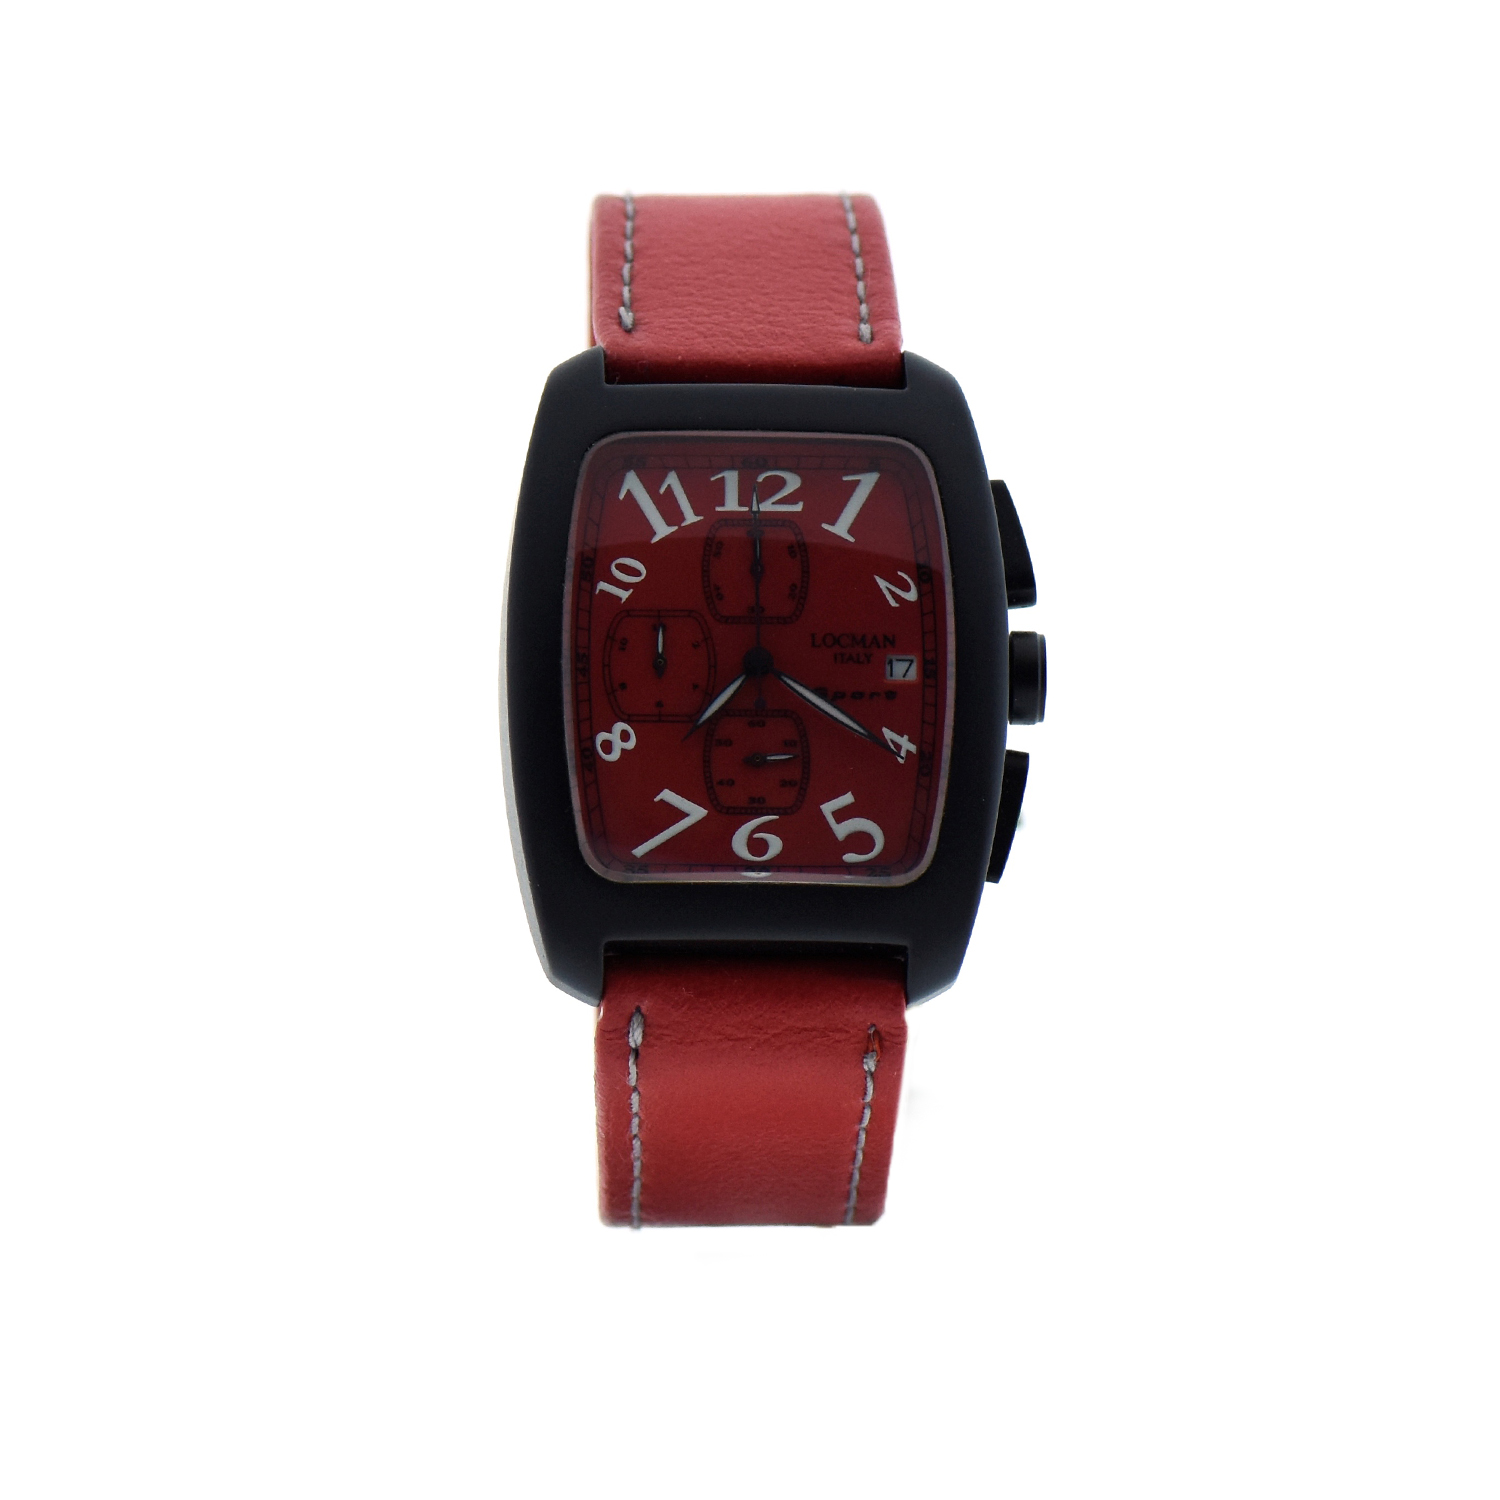 Orologio Locman modello Sport cronografo datario cassa alluminio cinturino pelle rosso Gioielleria Cipolla Palermo